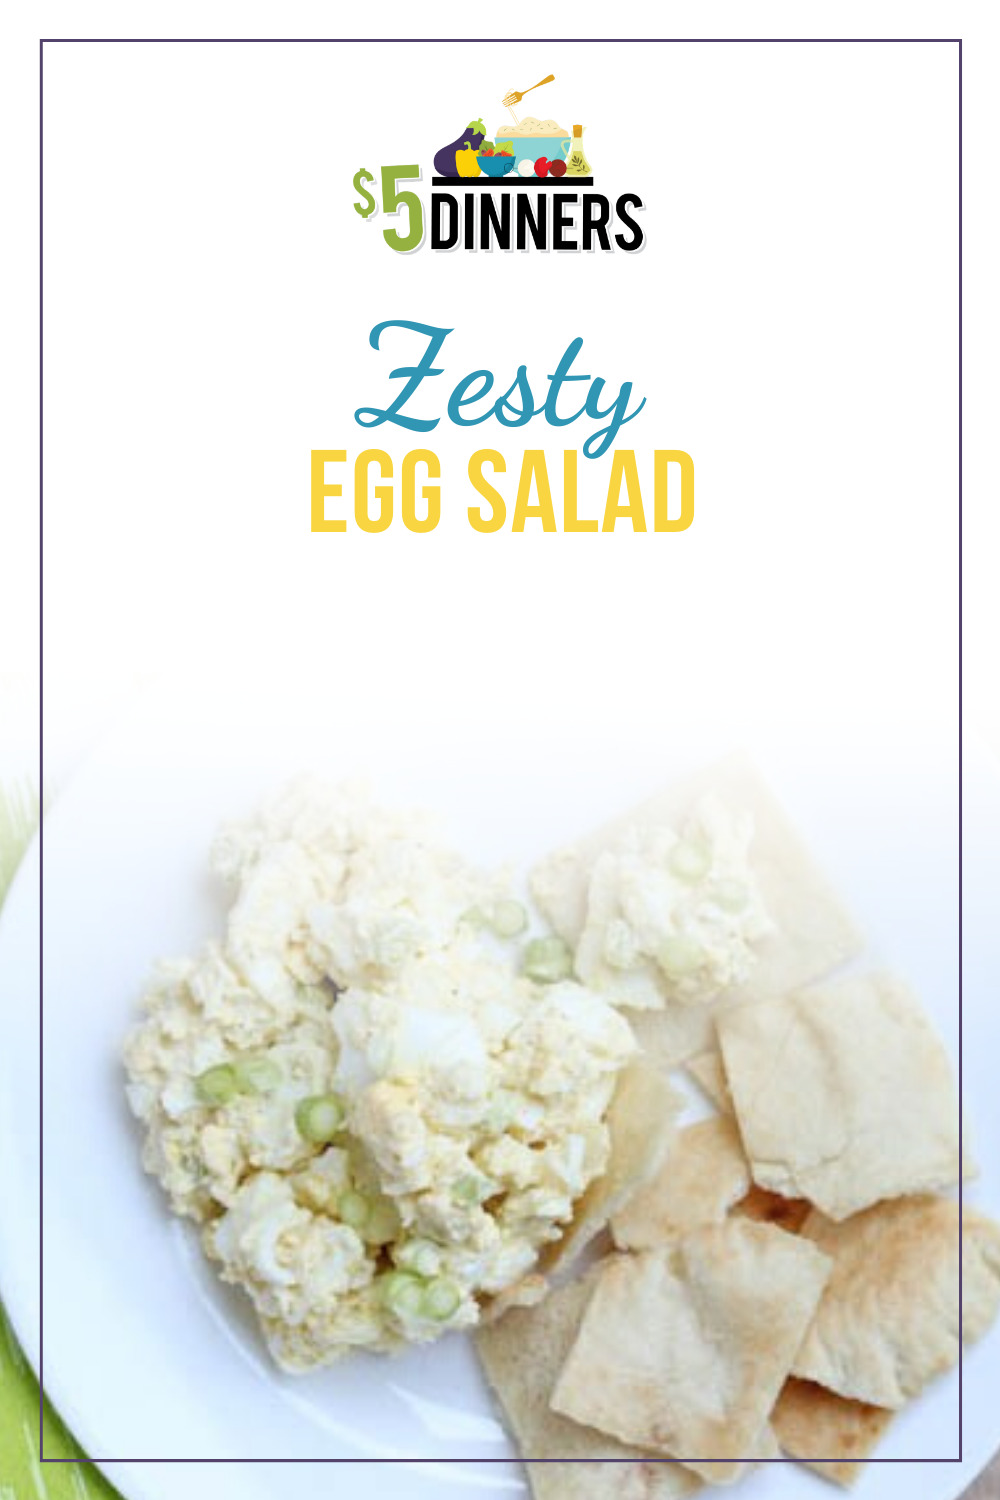 zesty egg salad